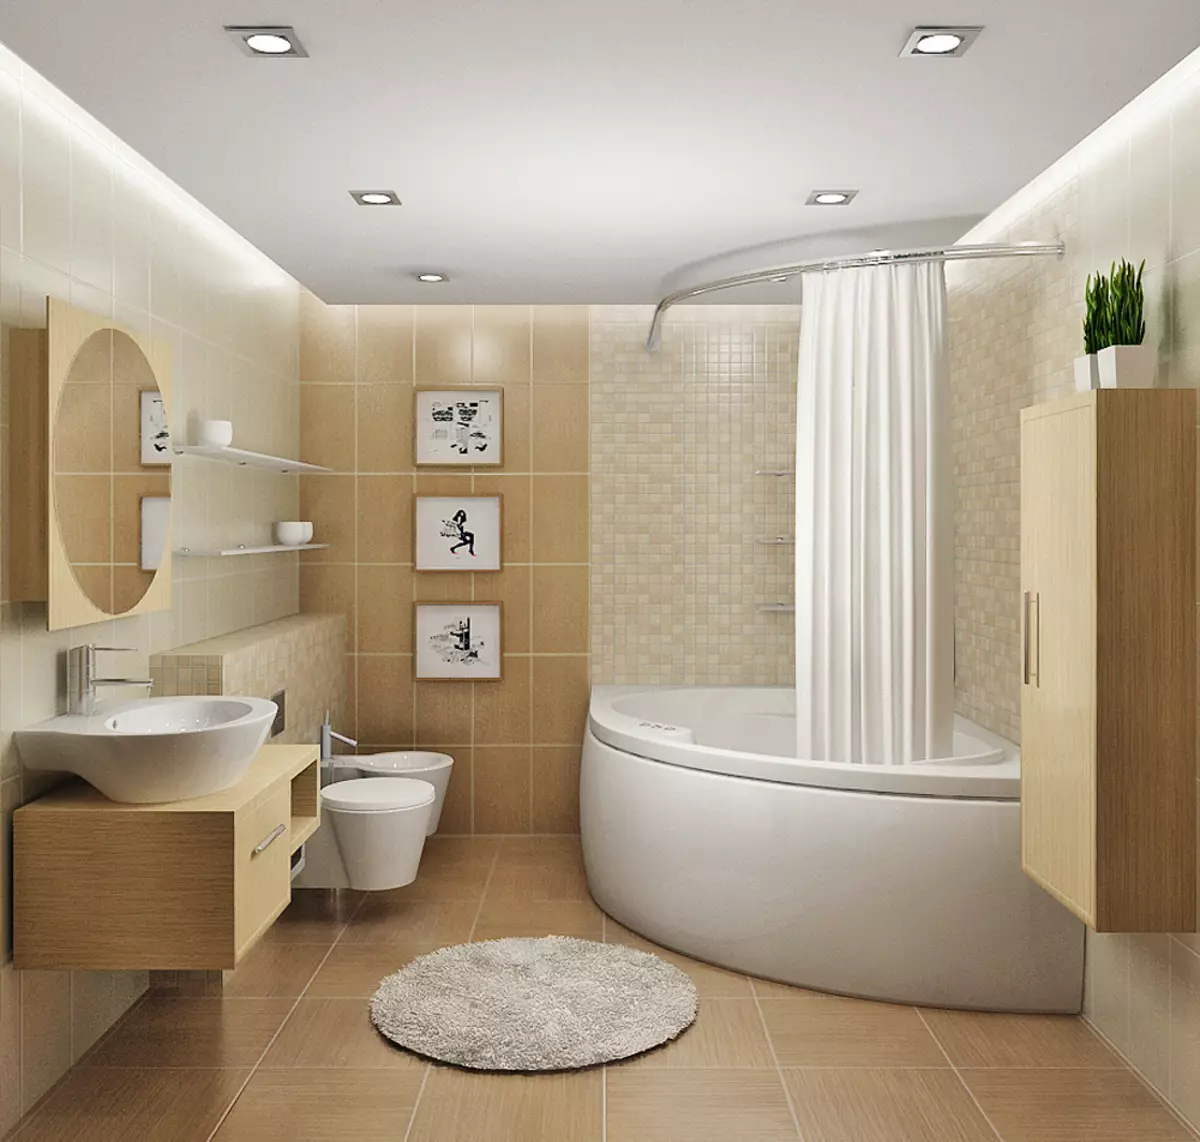 組合浴室的設計6平方米。 M（77張照片）：室內設計與衛生間，浴佈置2乘3米 10454_64